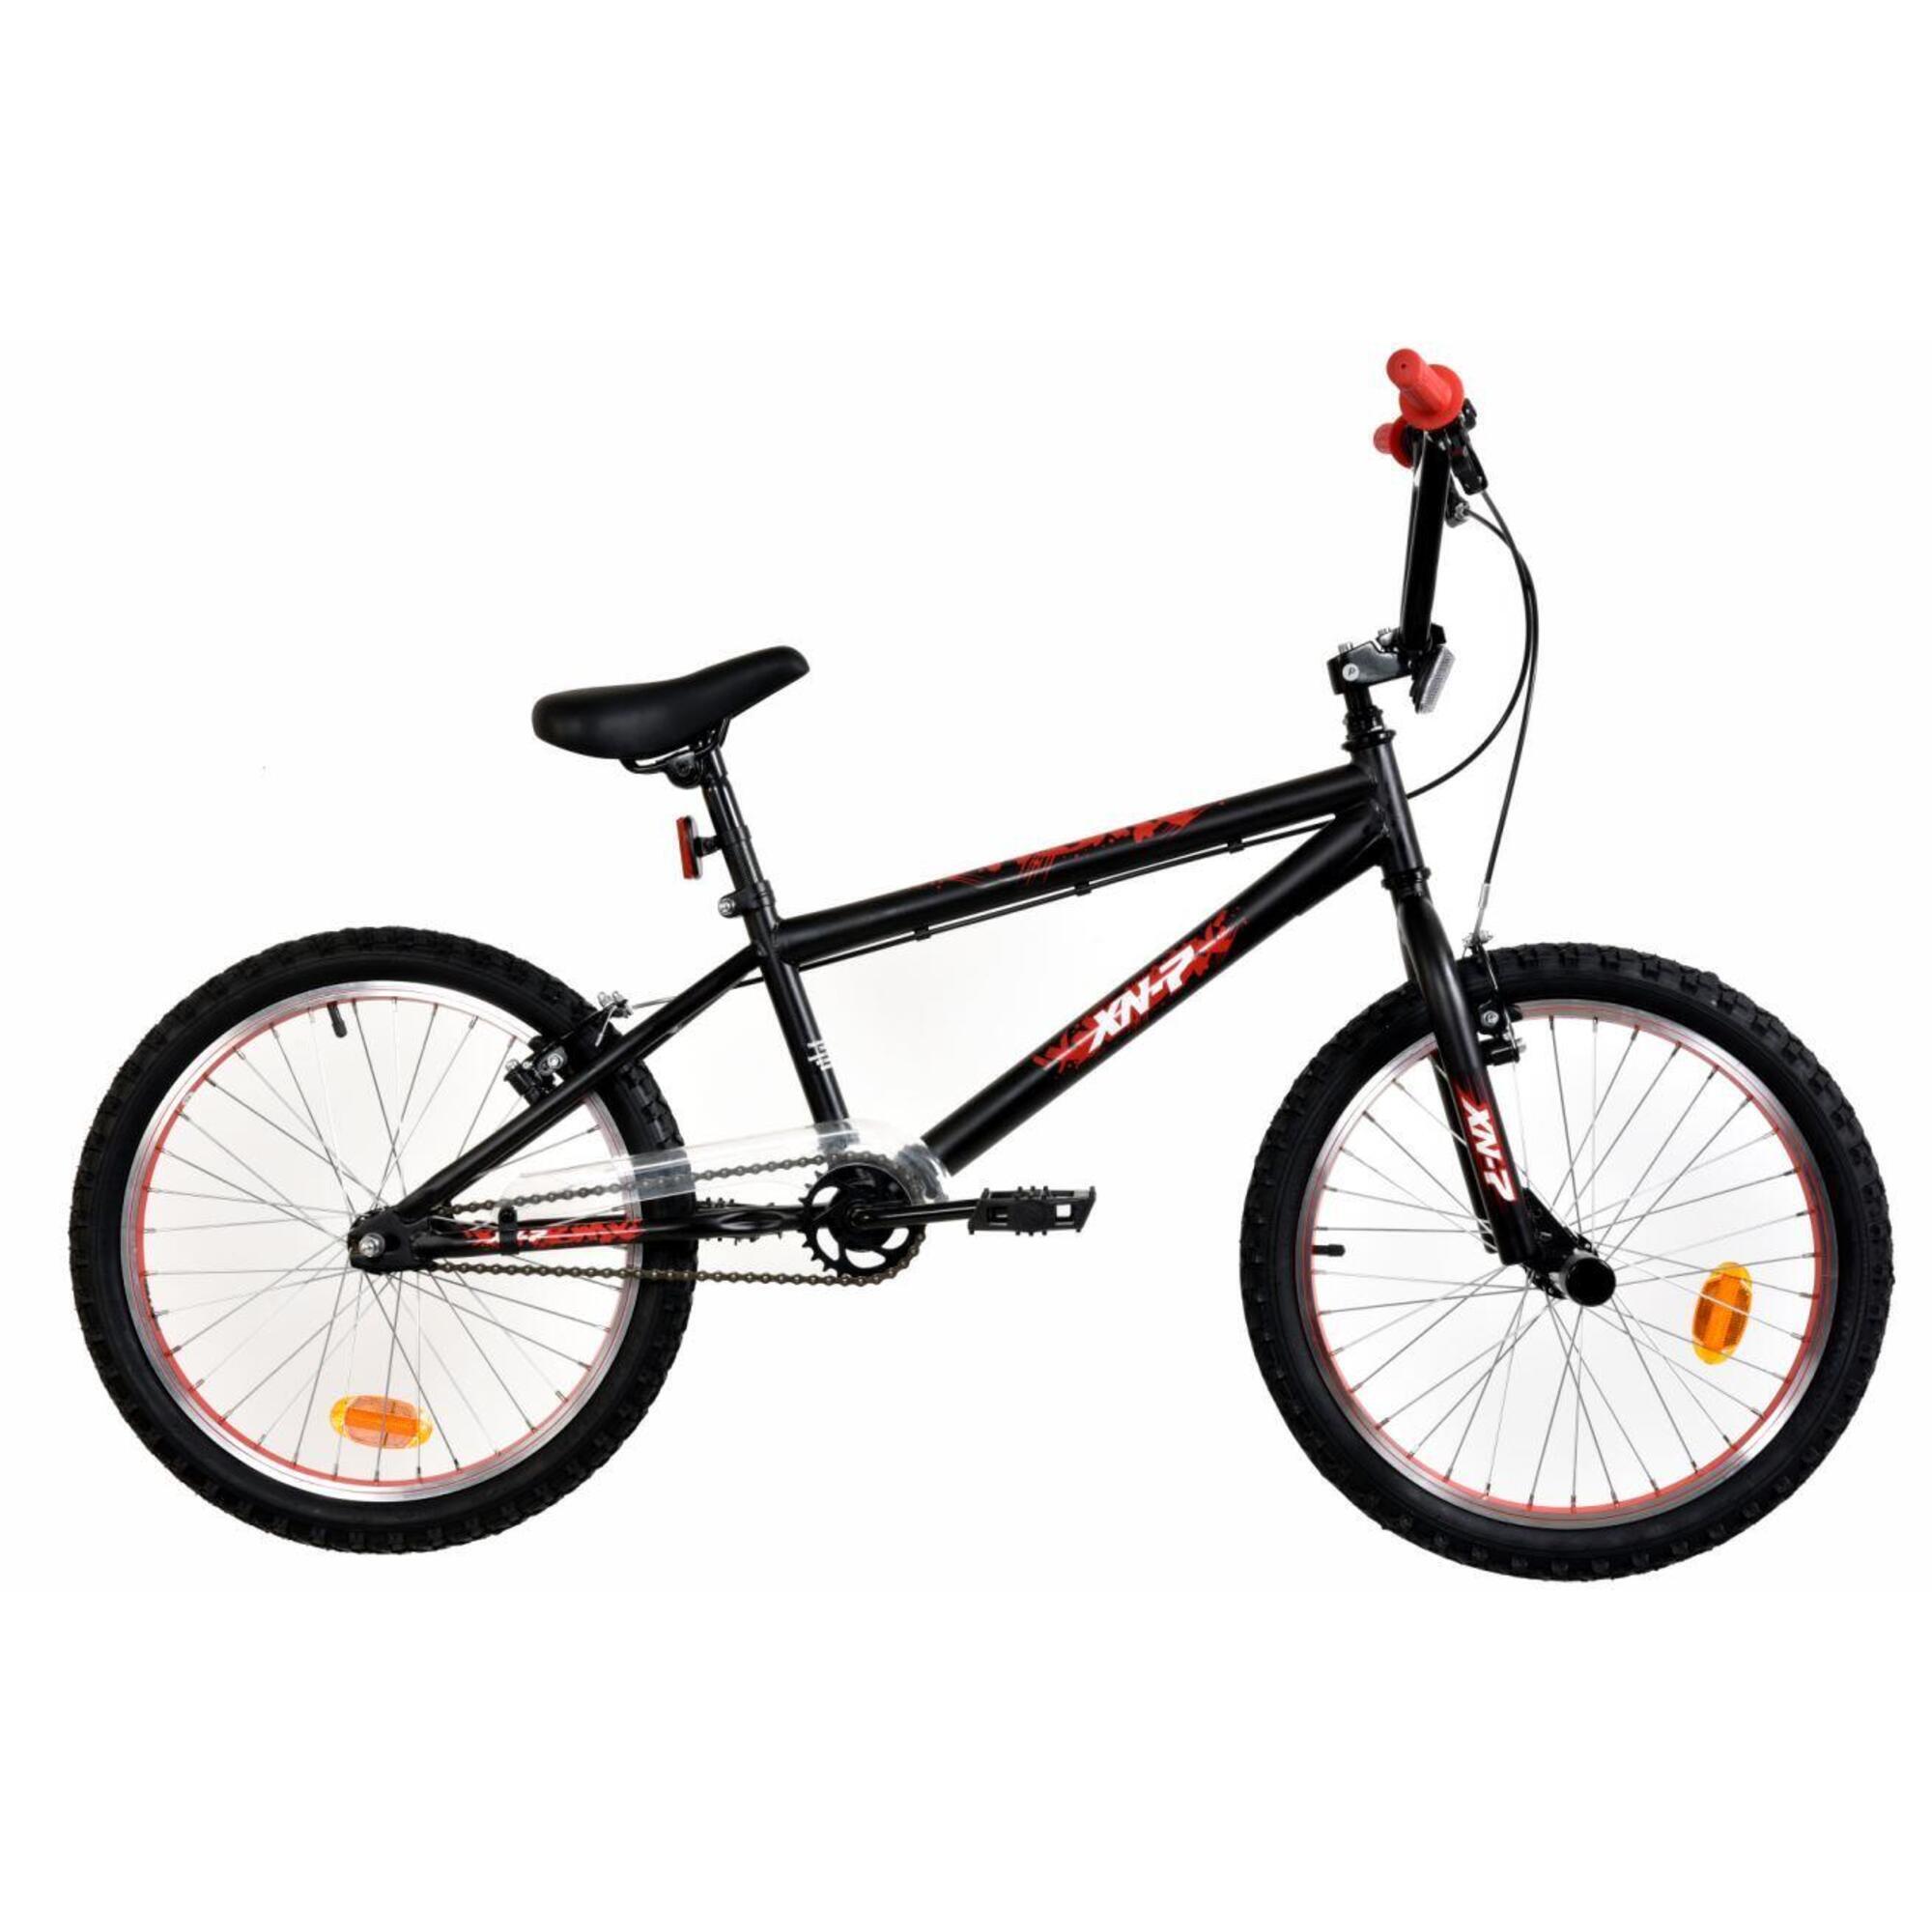 XN XN-7-20 BMX Bike, 20In Wheel - Satin Black/Red